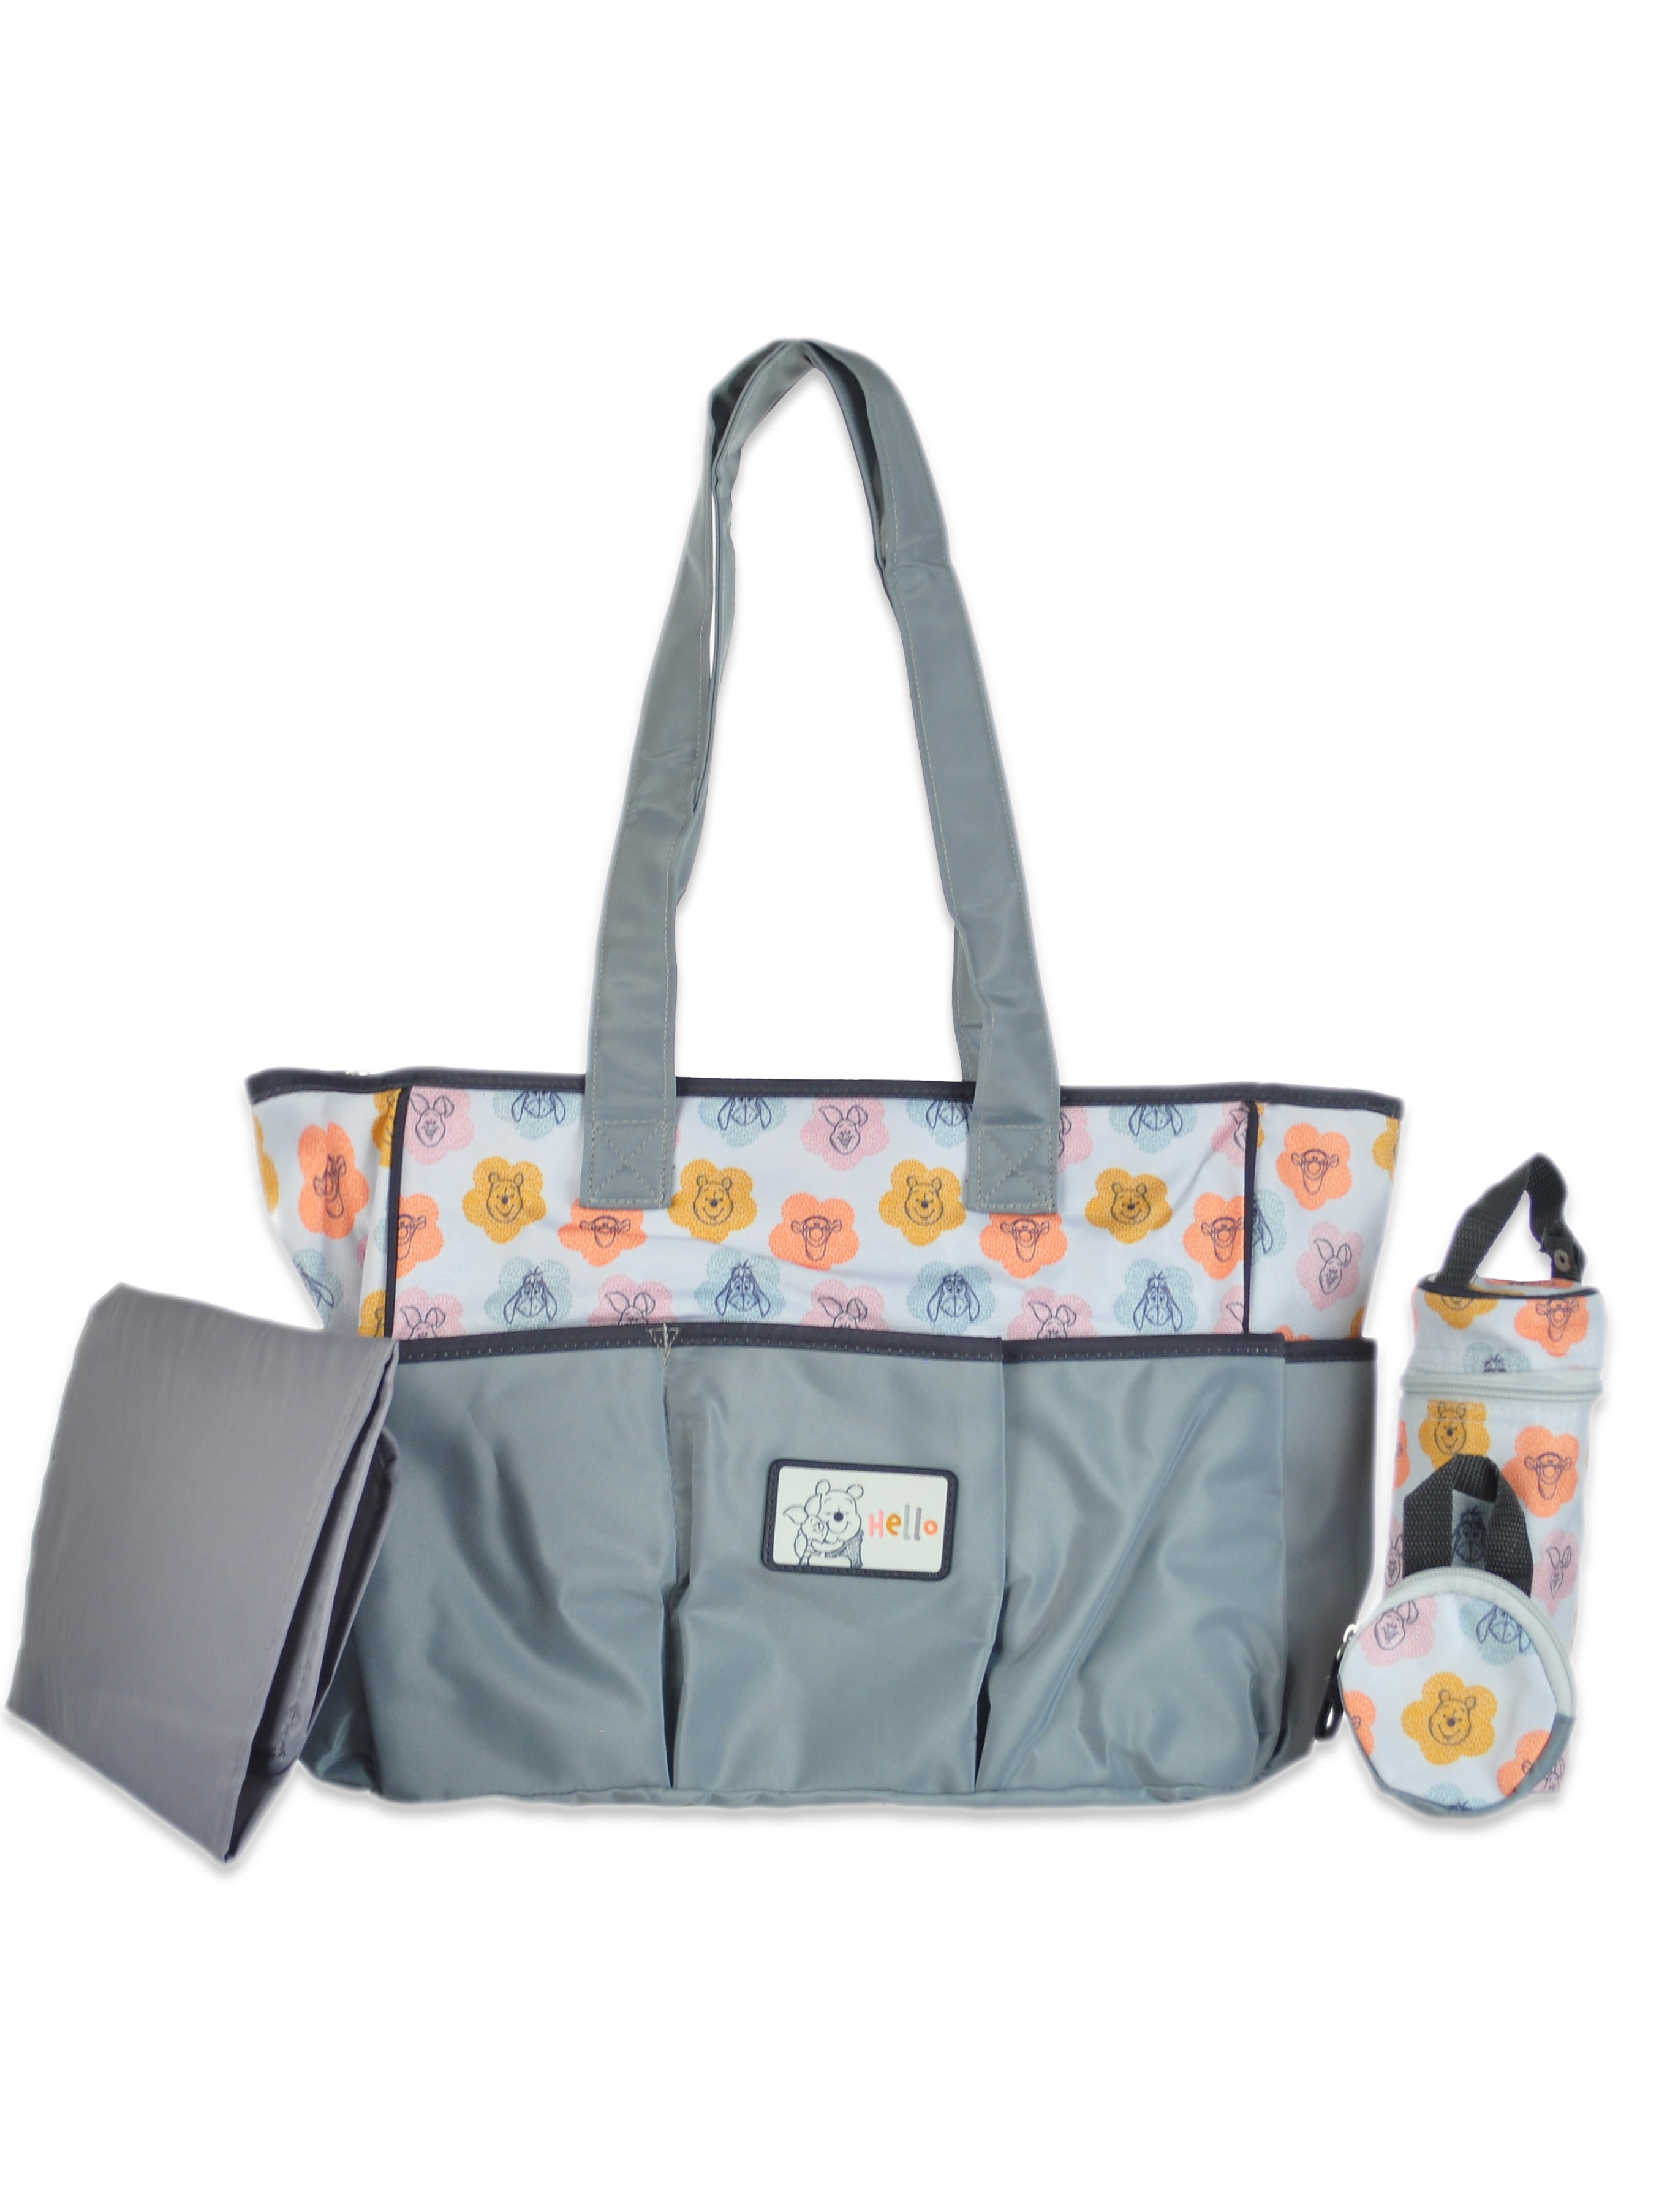 Practical Baby Organizer Pouch Mummy Handbag Storage Management Diaper Bag 